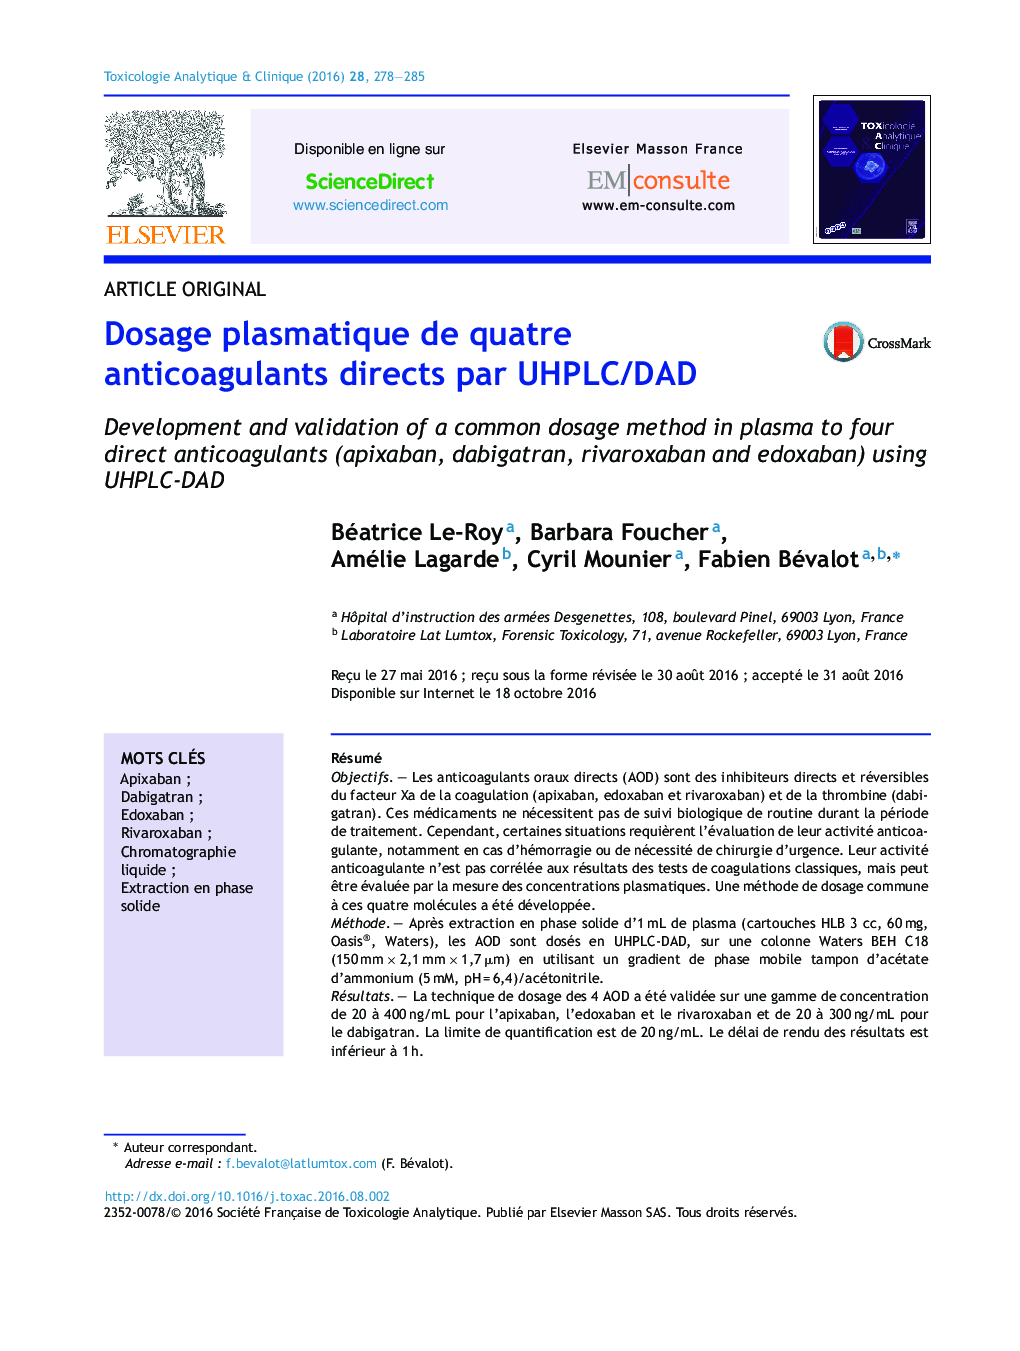 Dosage plasmatique de quatre anticoagulants directs par UHPLC/DAD